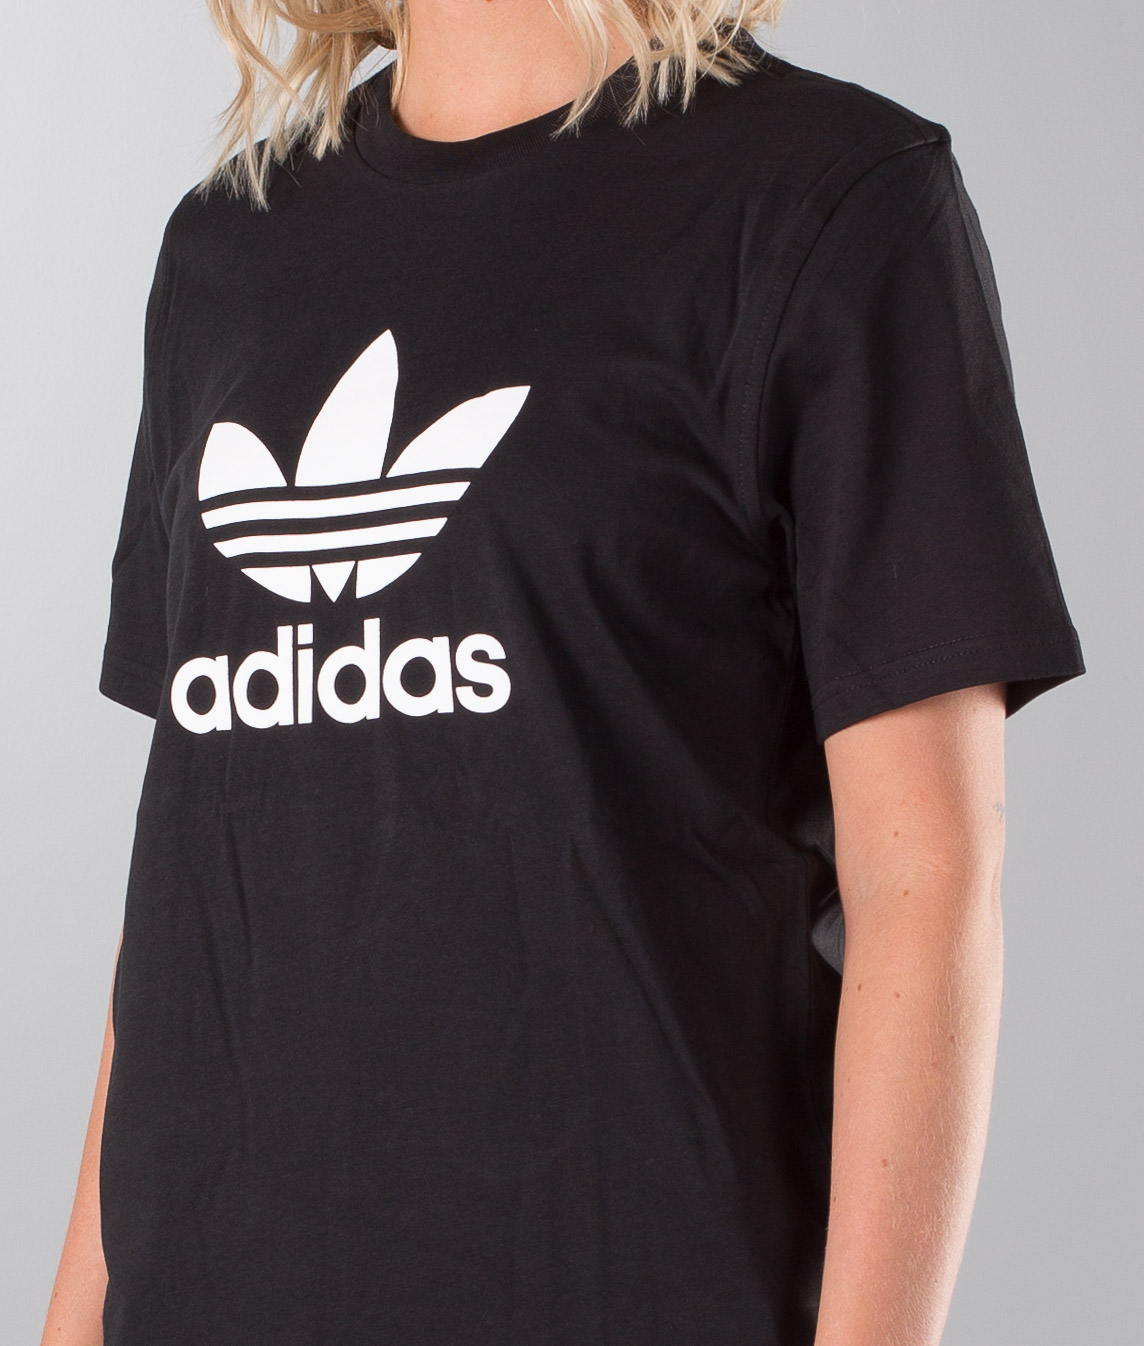 Adidas Originals Trefoil Unisex Camiseta Black - Ridestore.com